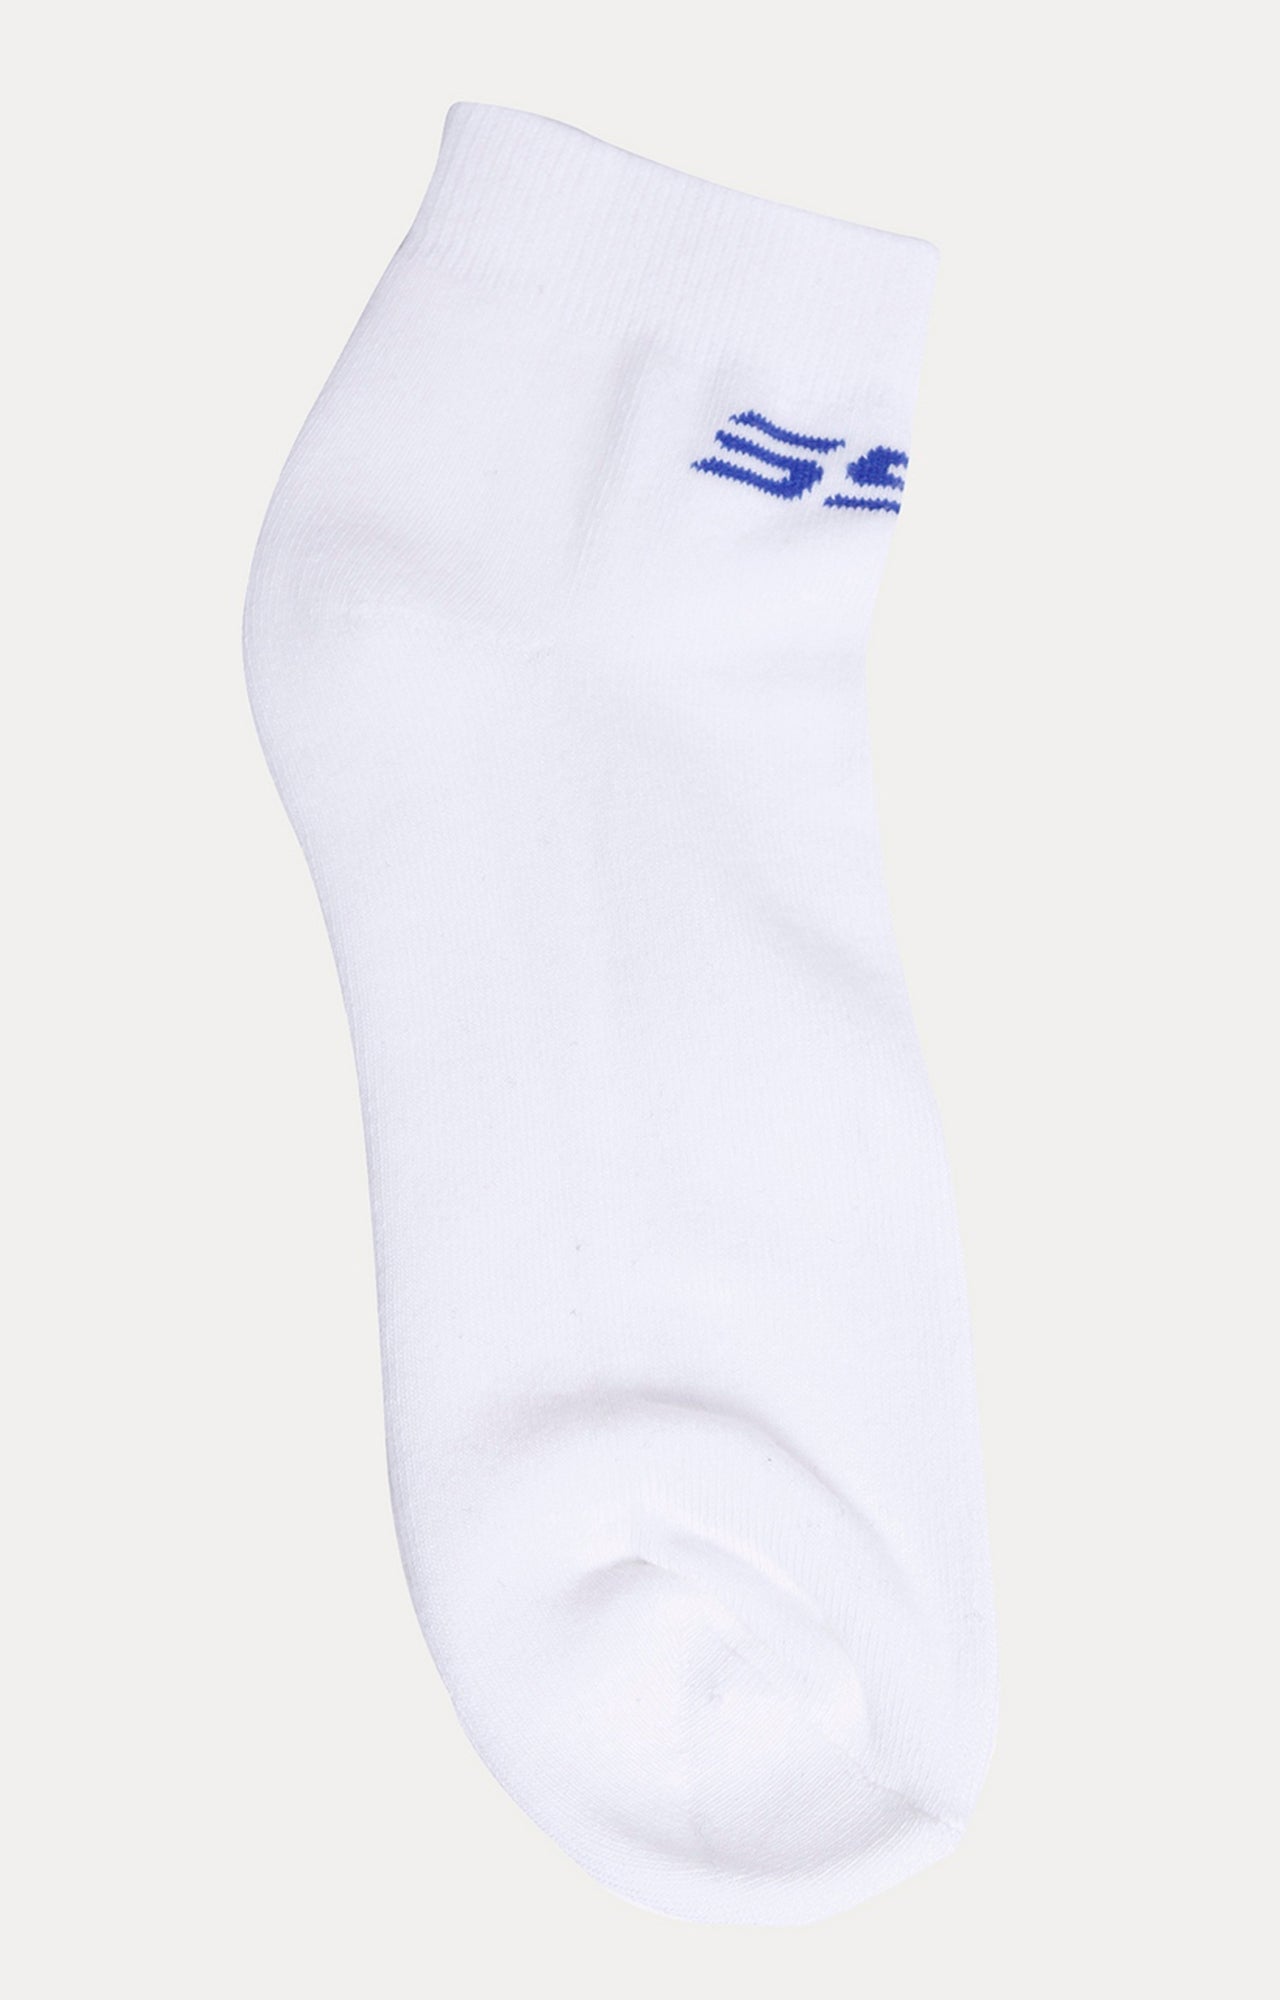 Spykar White & Navy Solid Ankle Length Socks - Pair Of 2